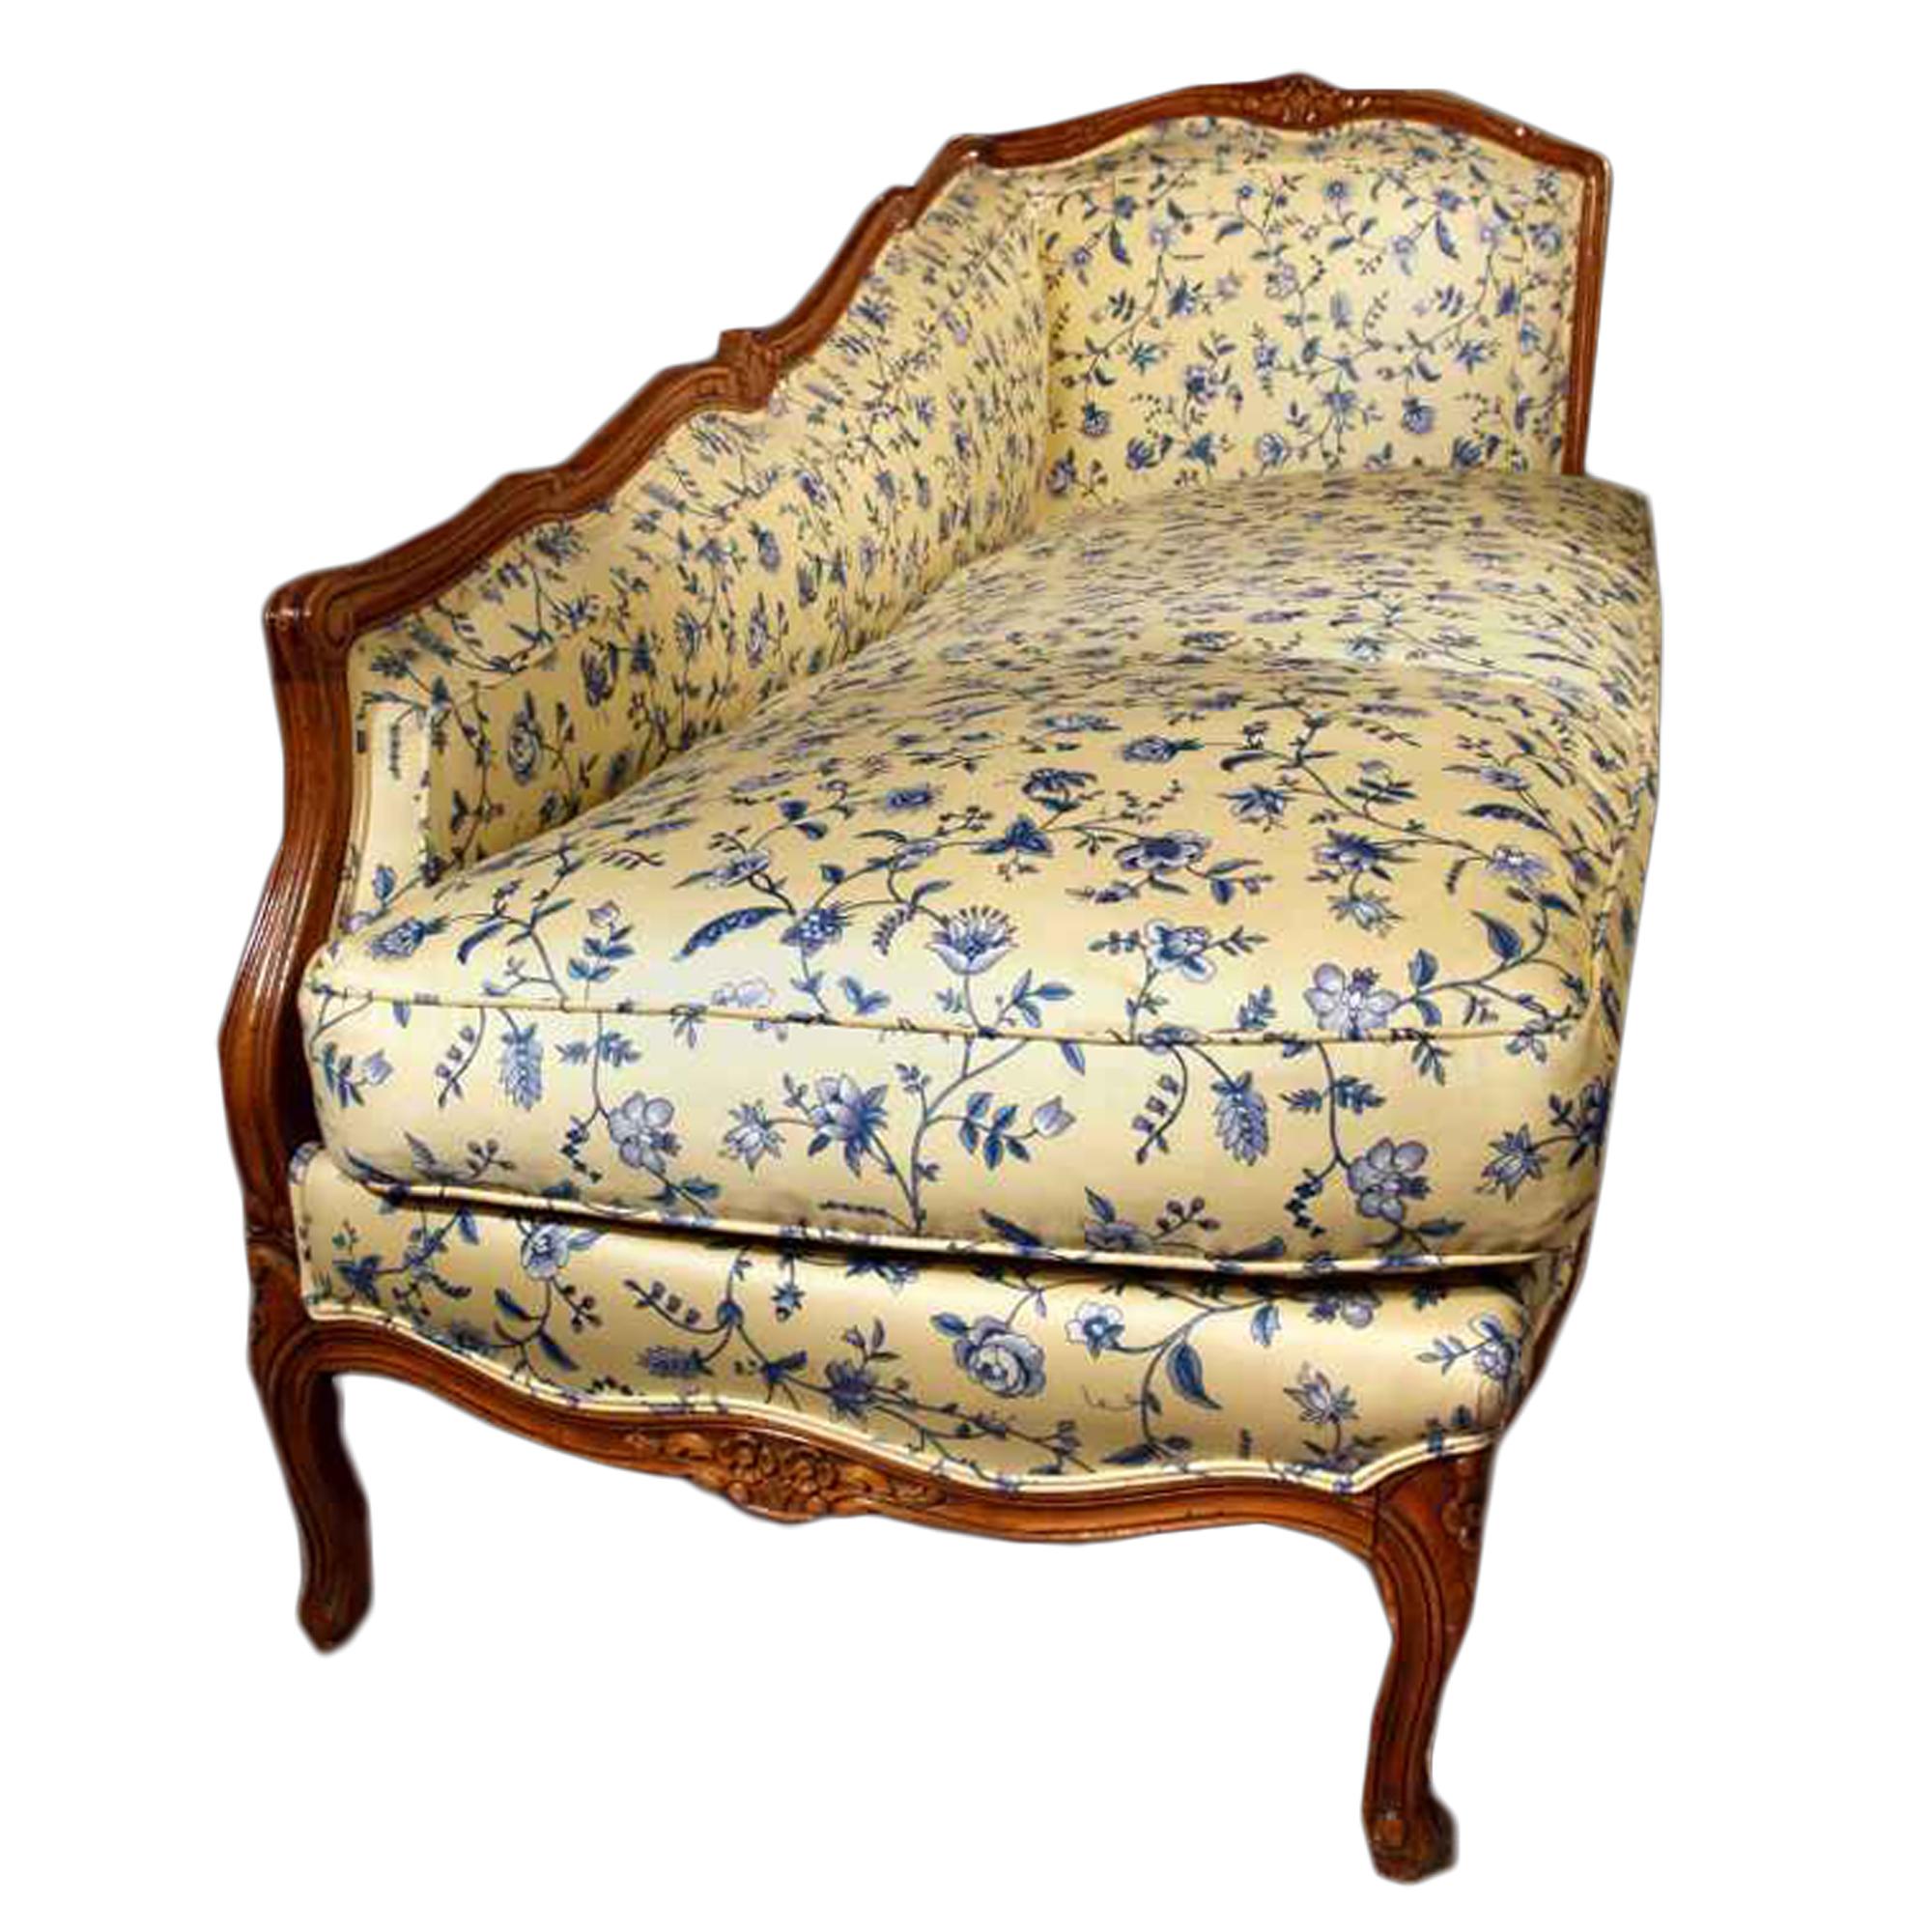 Eine elegante und ungewöhnliche Land Französisch Ende des 19. Jahrhunderts Louis XVI st. honigfarbenen Eiche Sessel. Allseits mit einem schönen blau-gelben Stoff gepolstert. Der Loungesessel steht auf sechs s-förmig geschwungenen Stützen und hat